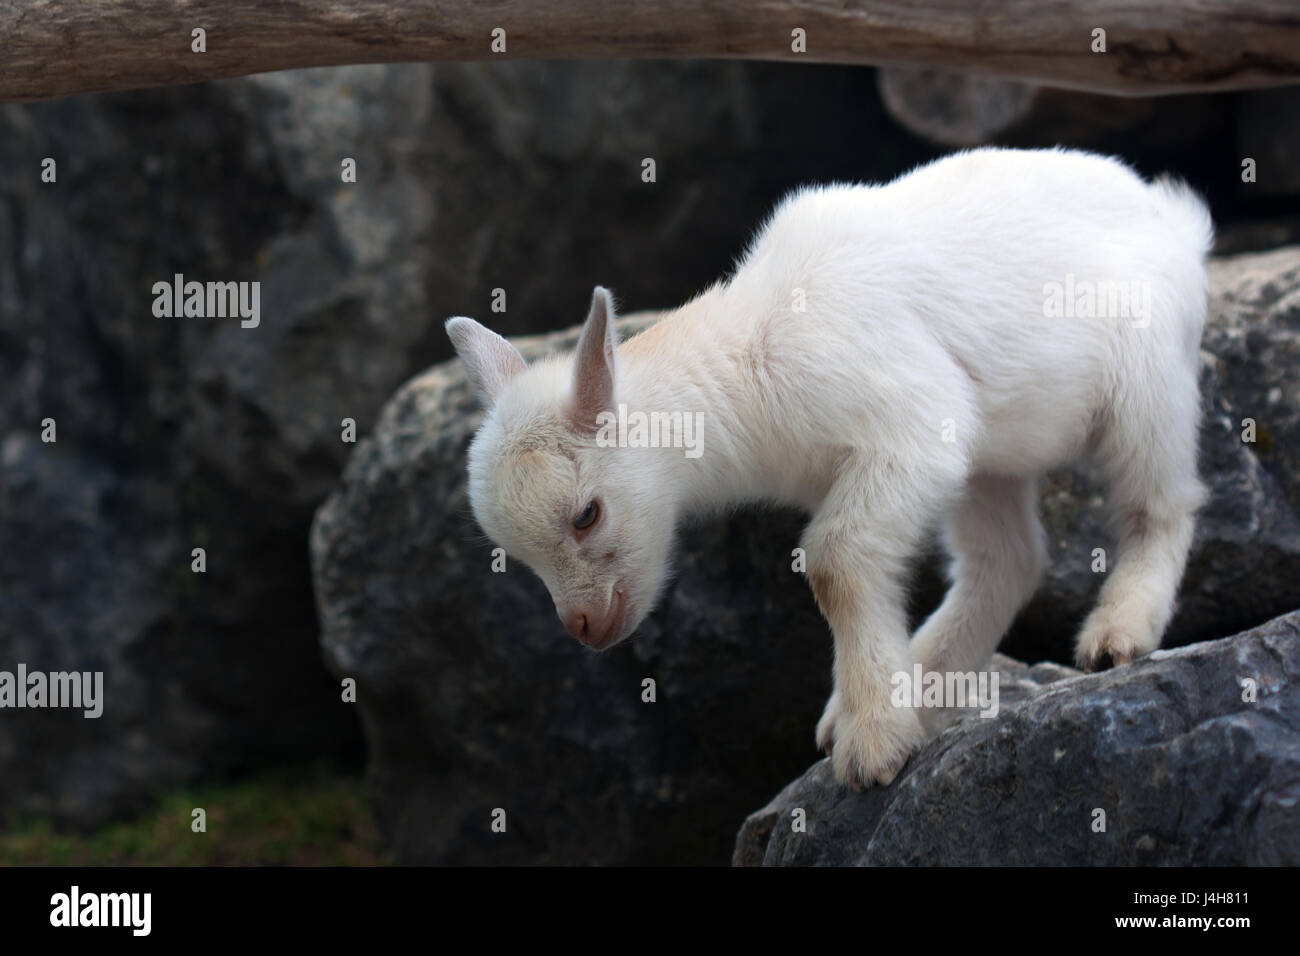 Junge weiße Baby Ziege unter grauen Felsen. Stockfoto